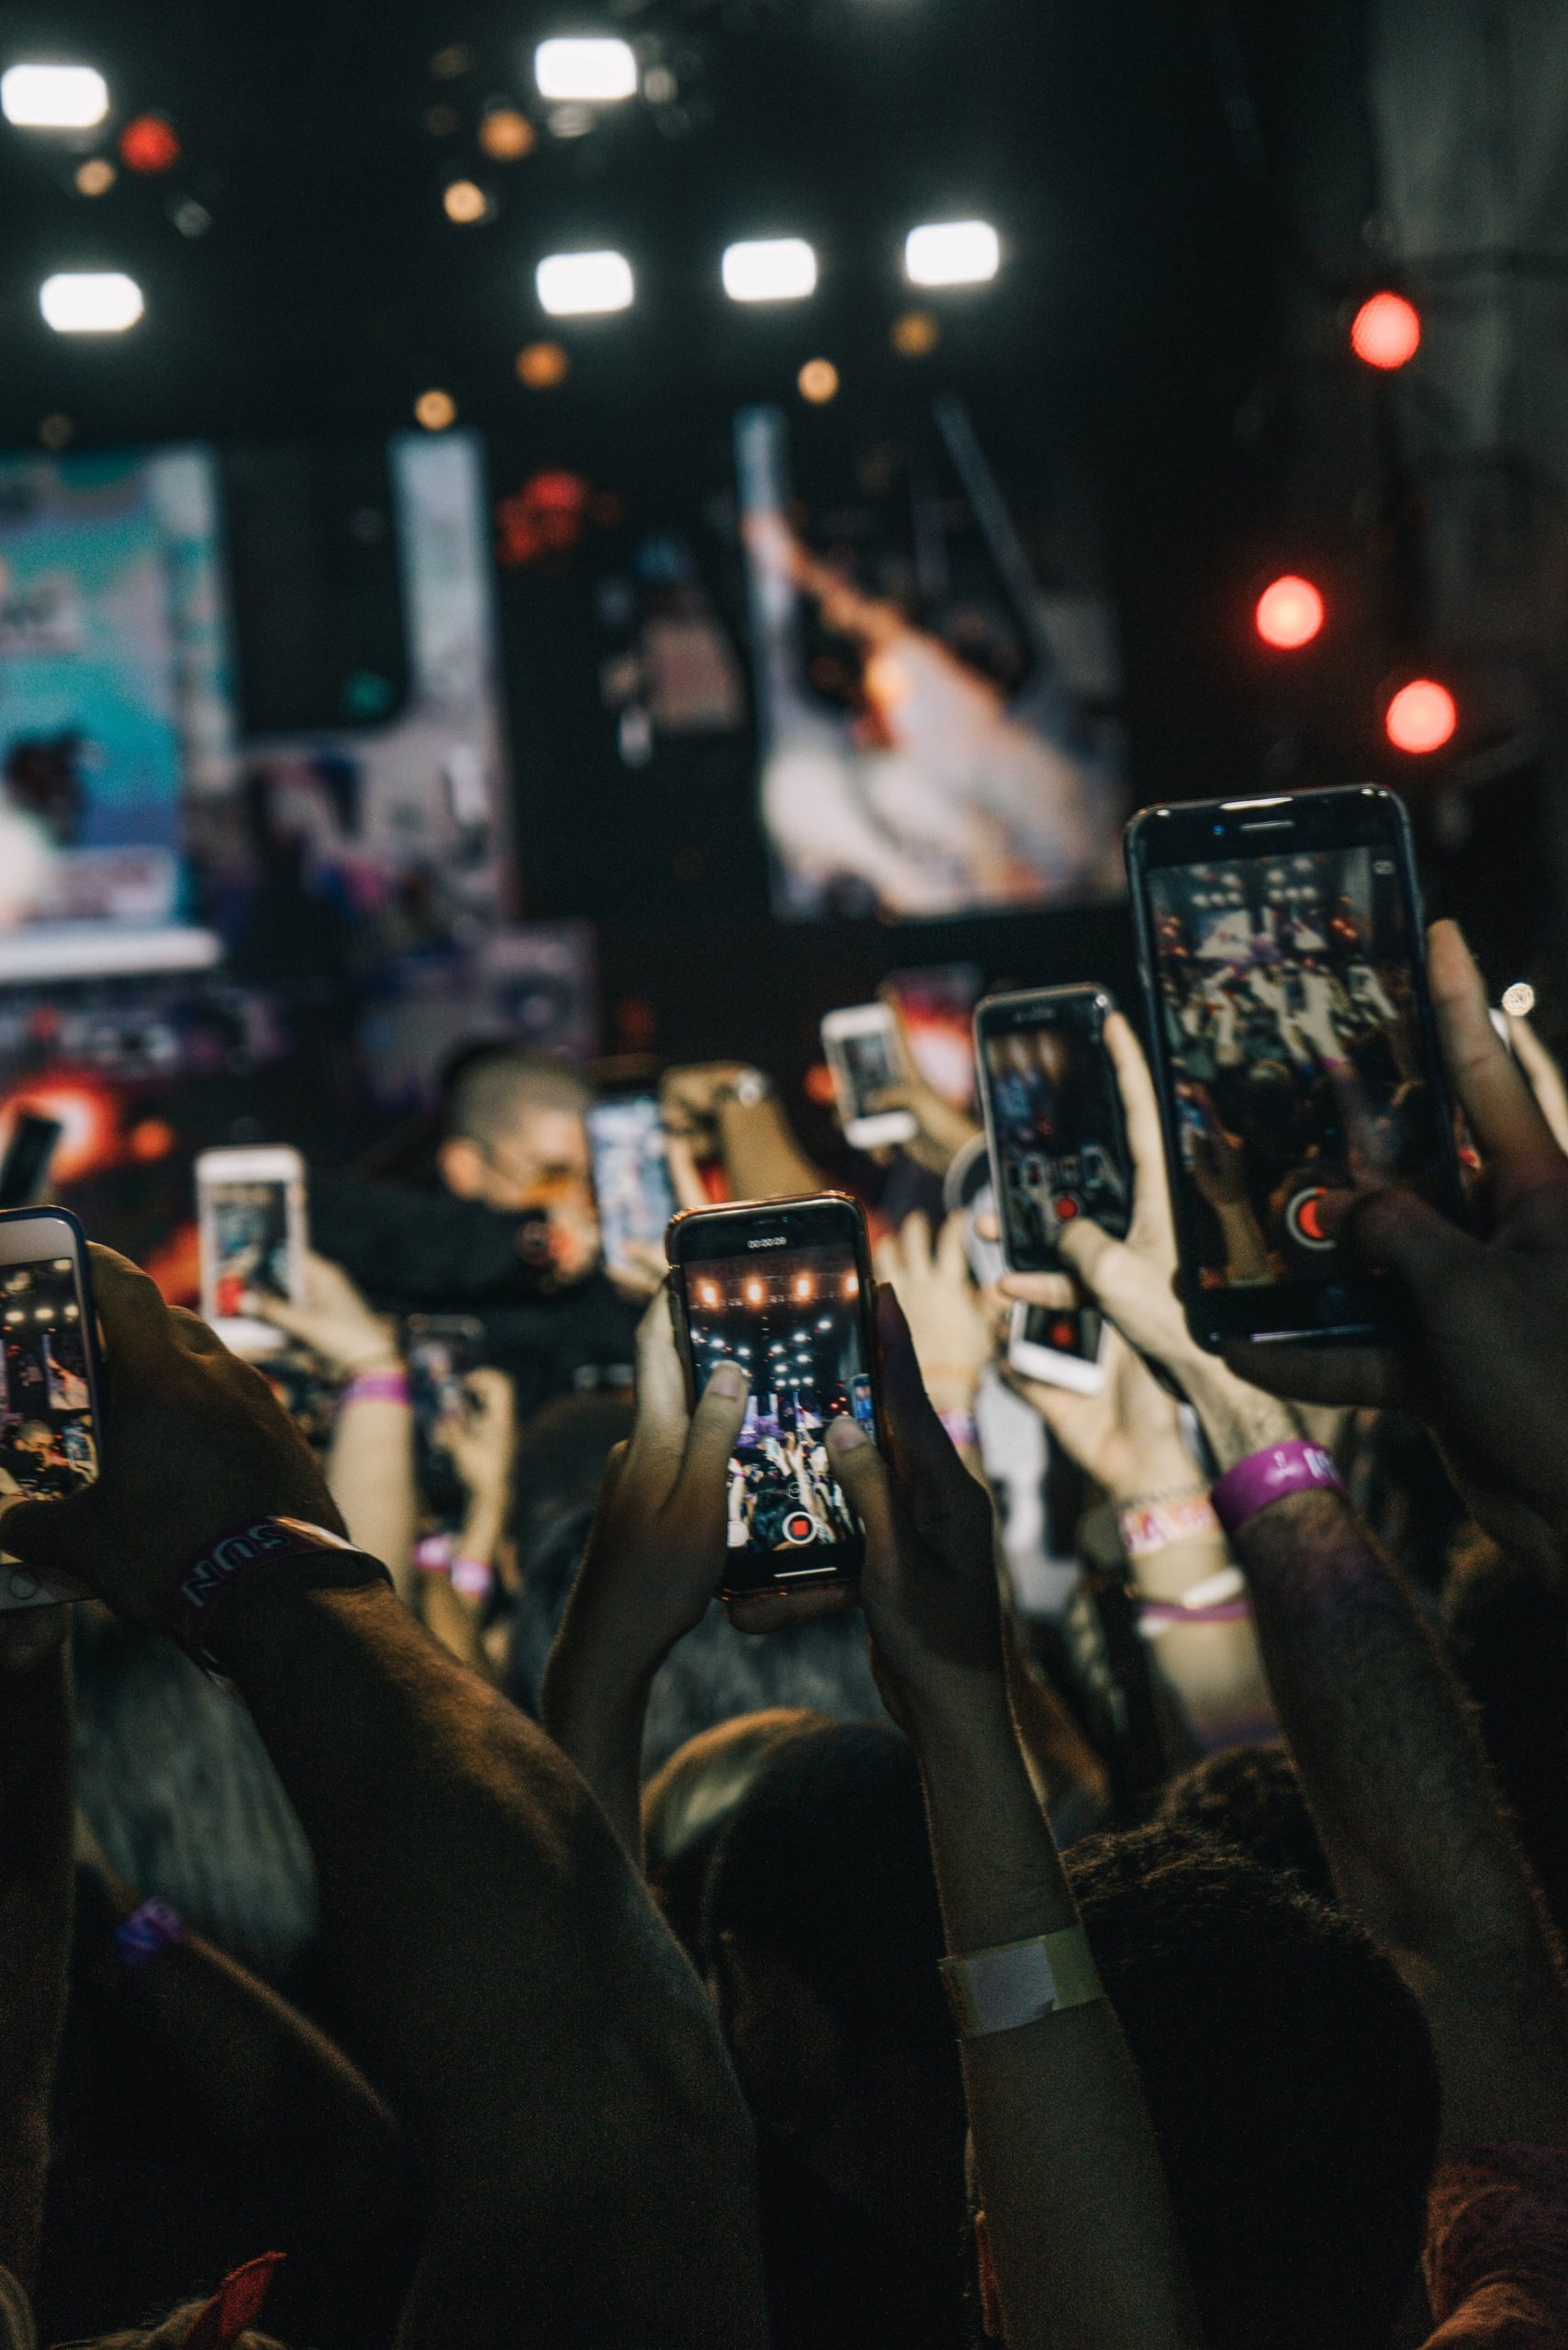 Некоторые смартфоны подняты во время концерта